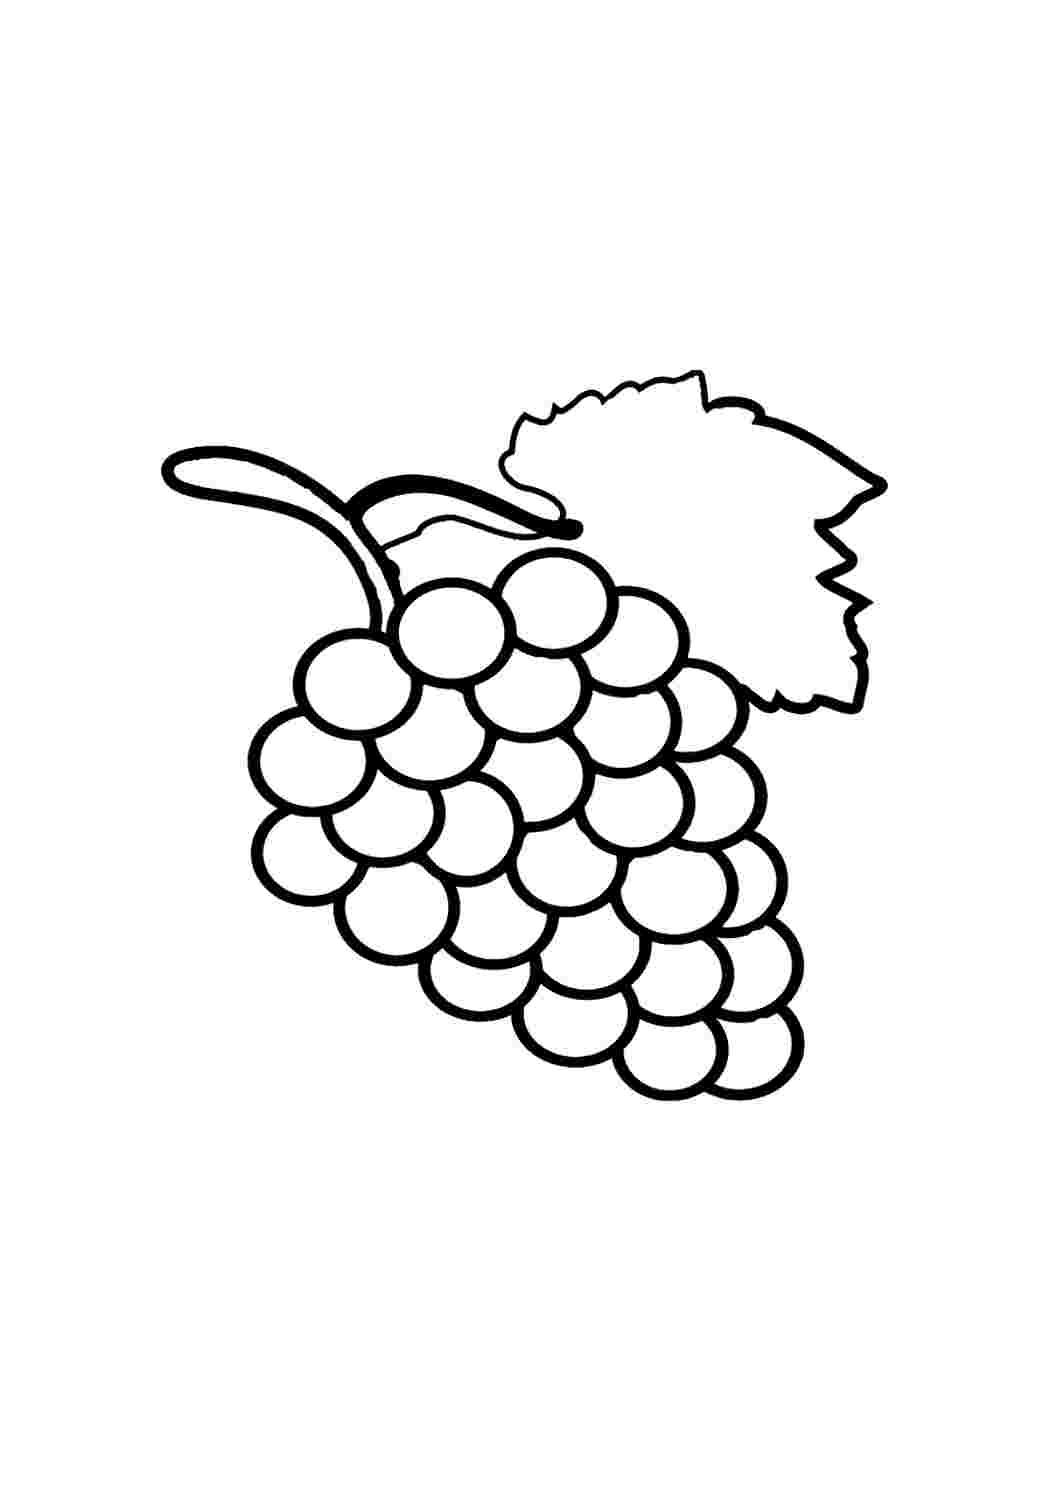 Фрукты виноград на английском раскраска